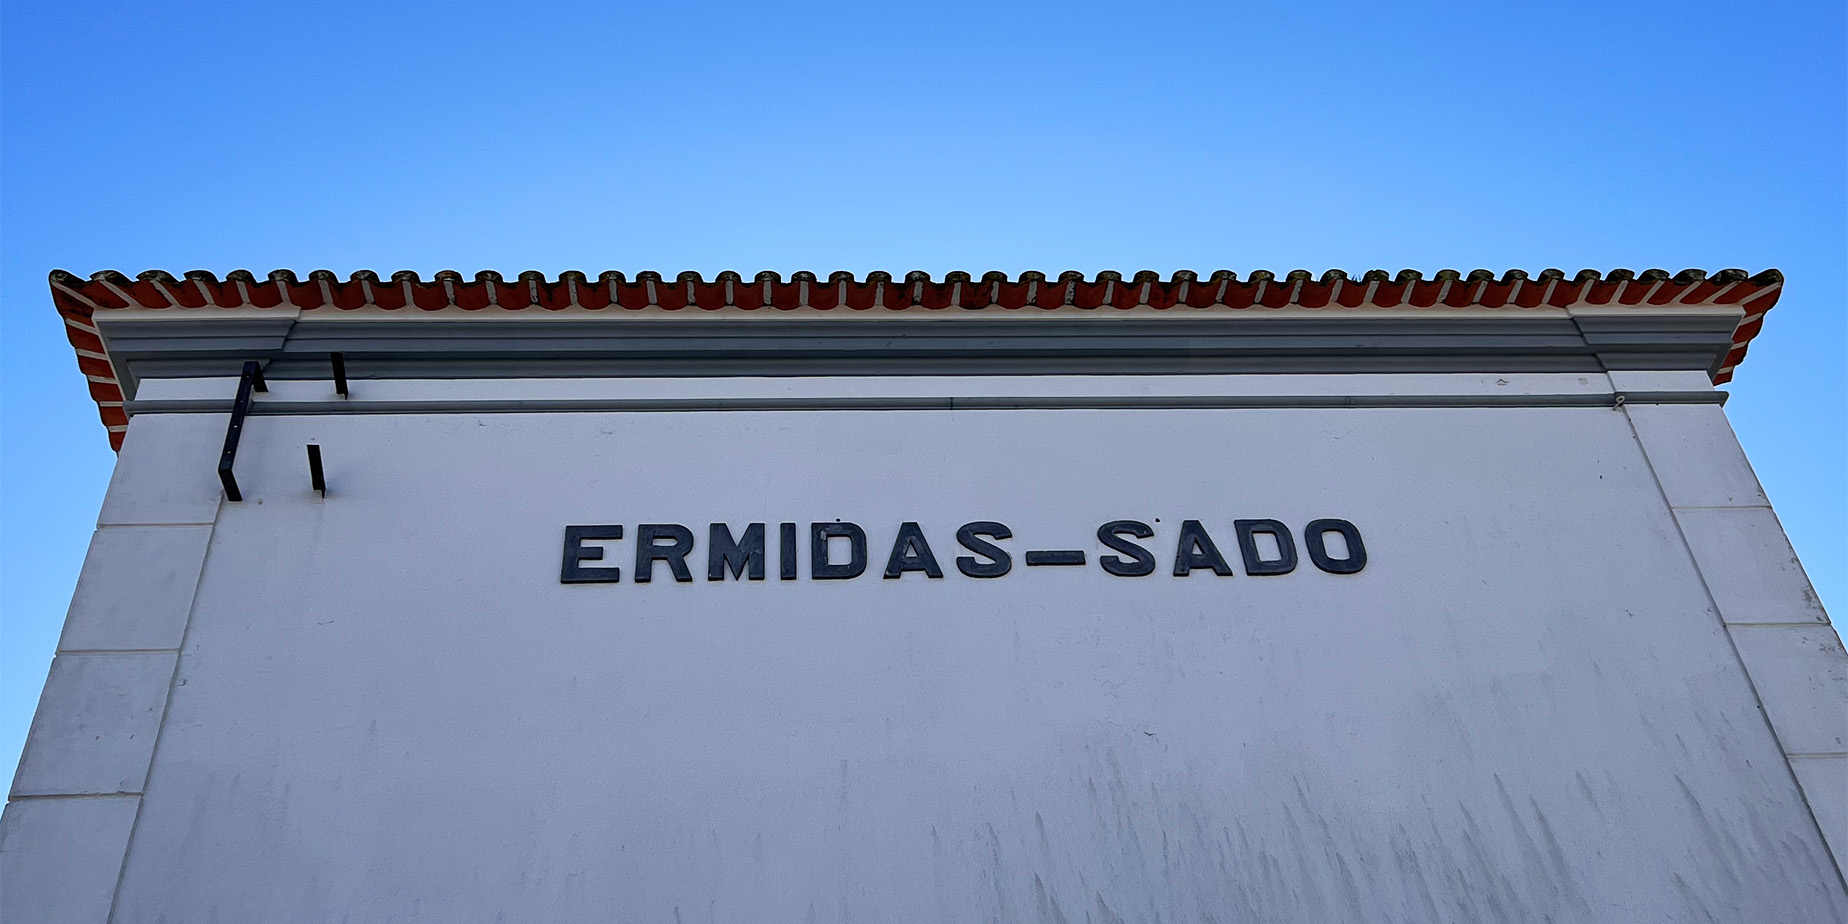 Ermidas-Sado har passerat sitt bäst före datum